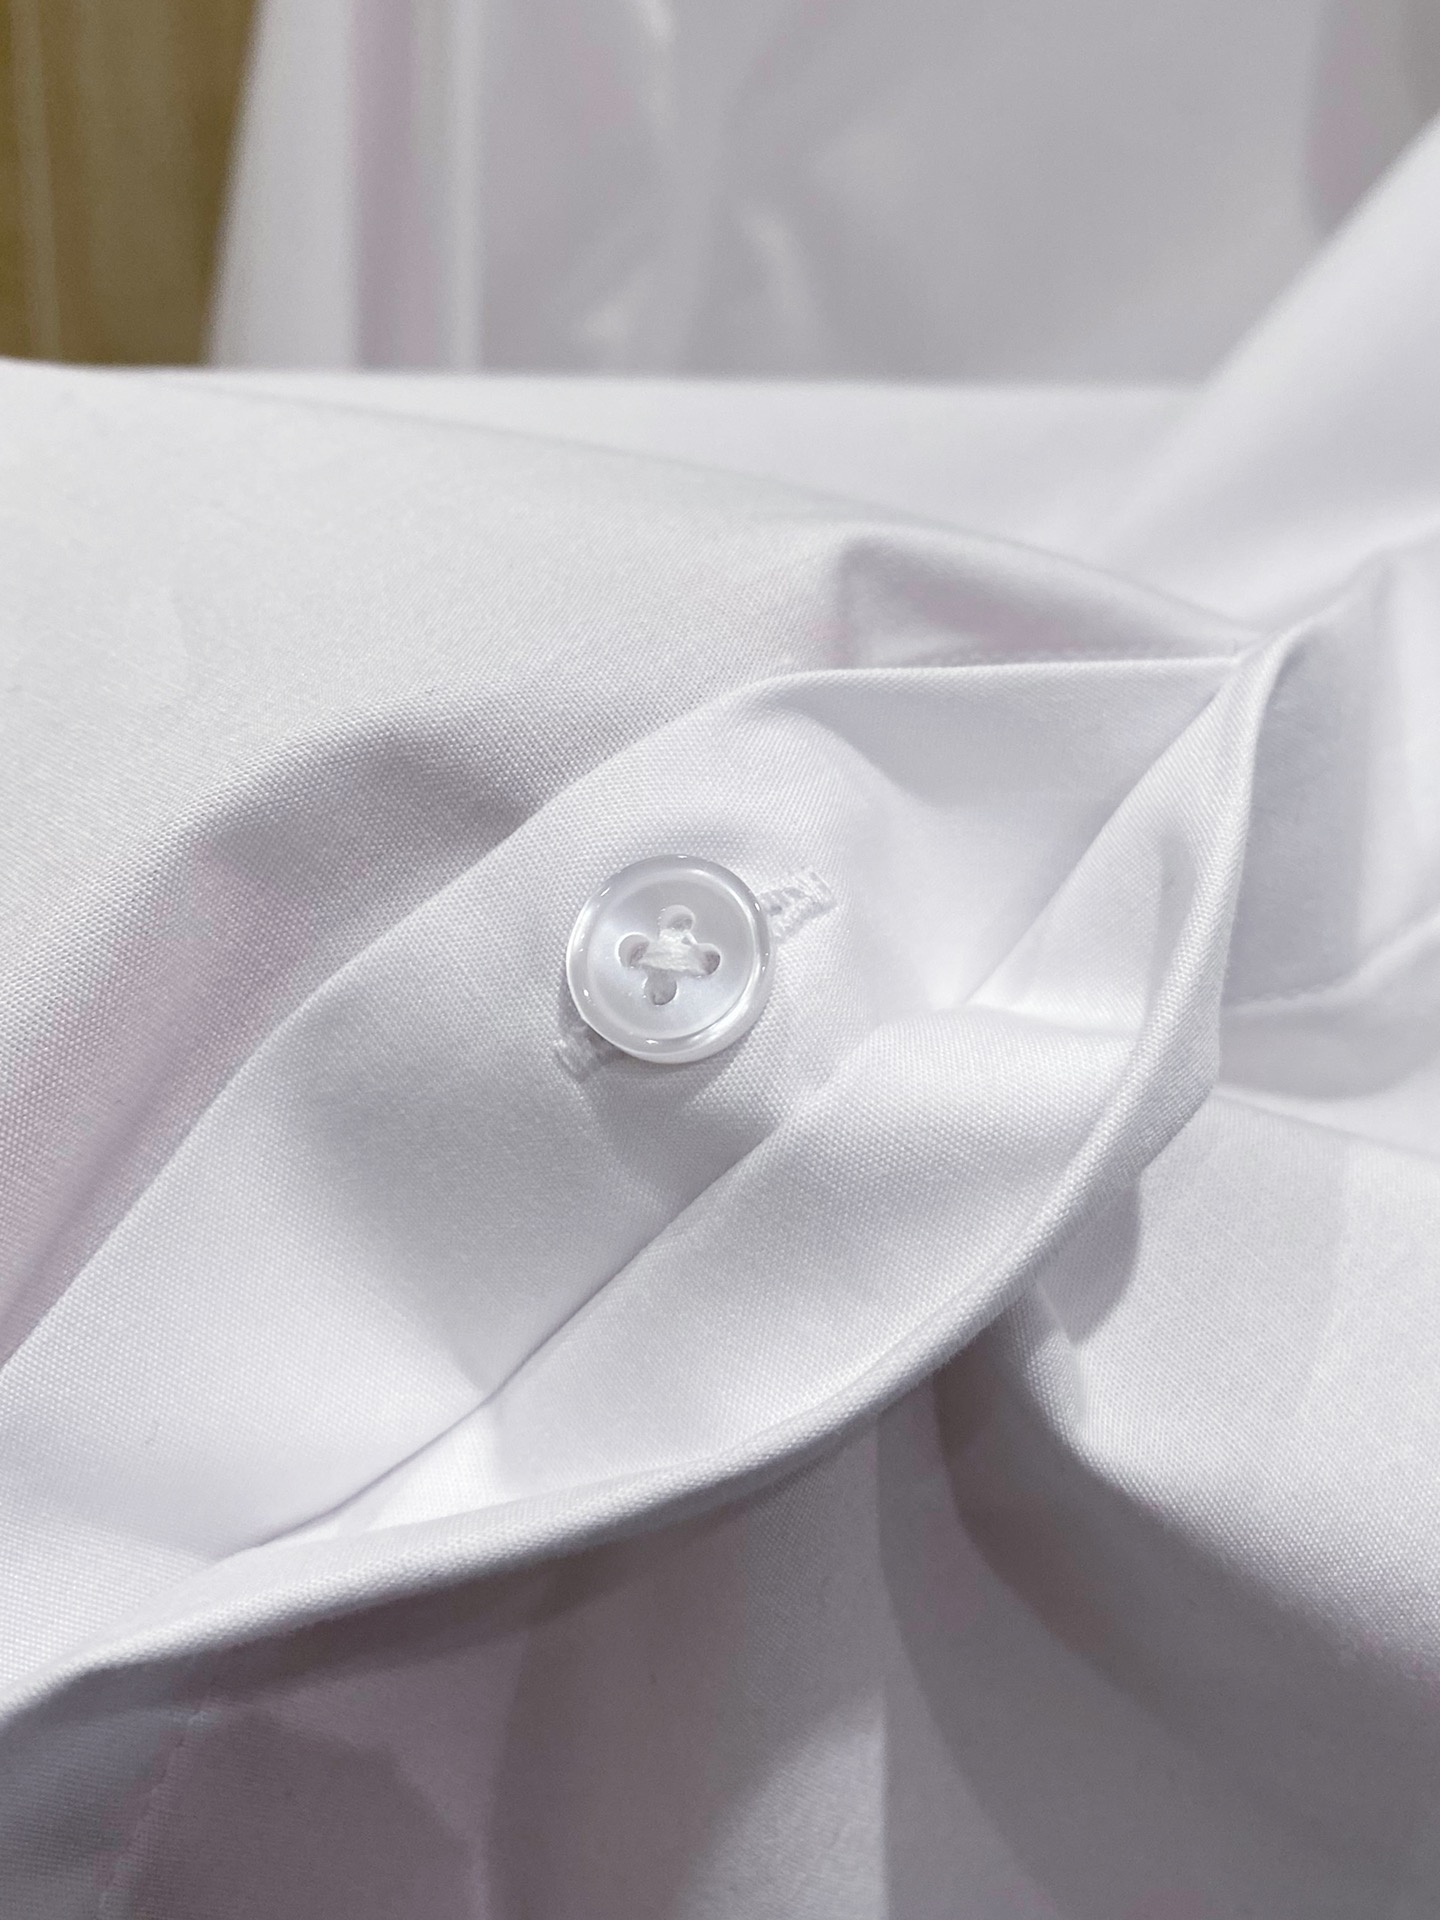 素敵な ヴェルサーチ ワイシャツコピー 高級品 トップス ビジネス ゆったり 人気新作 シンプル 2色可選 ホワイト_5